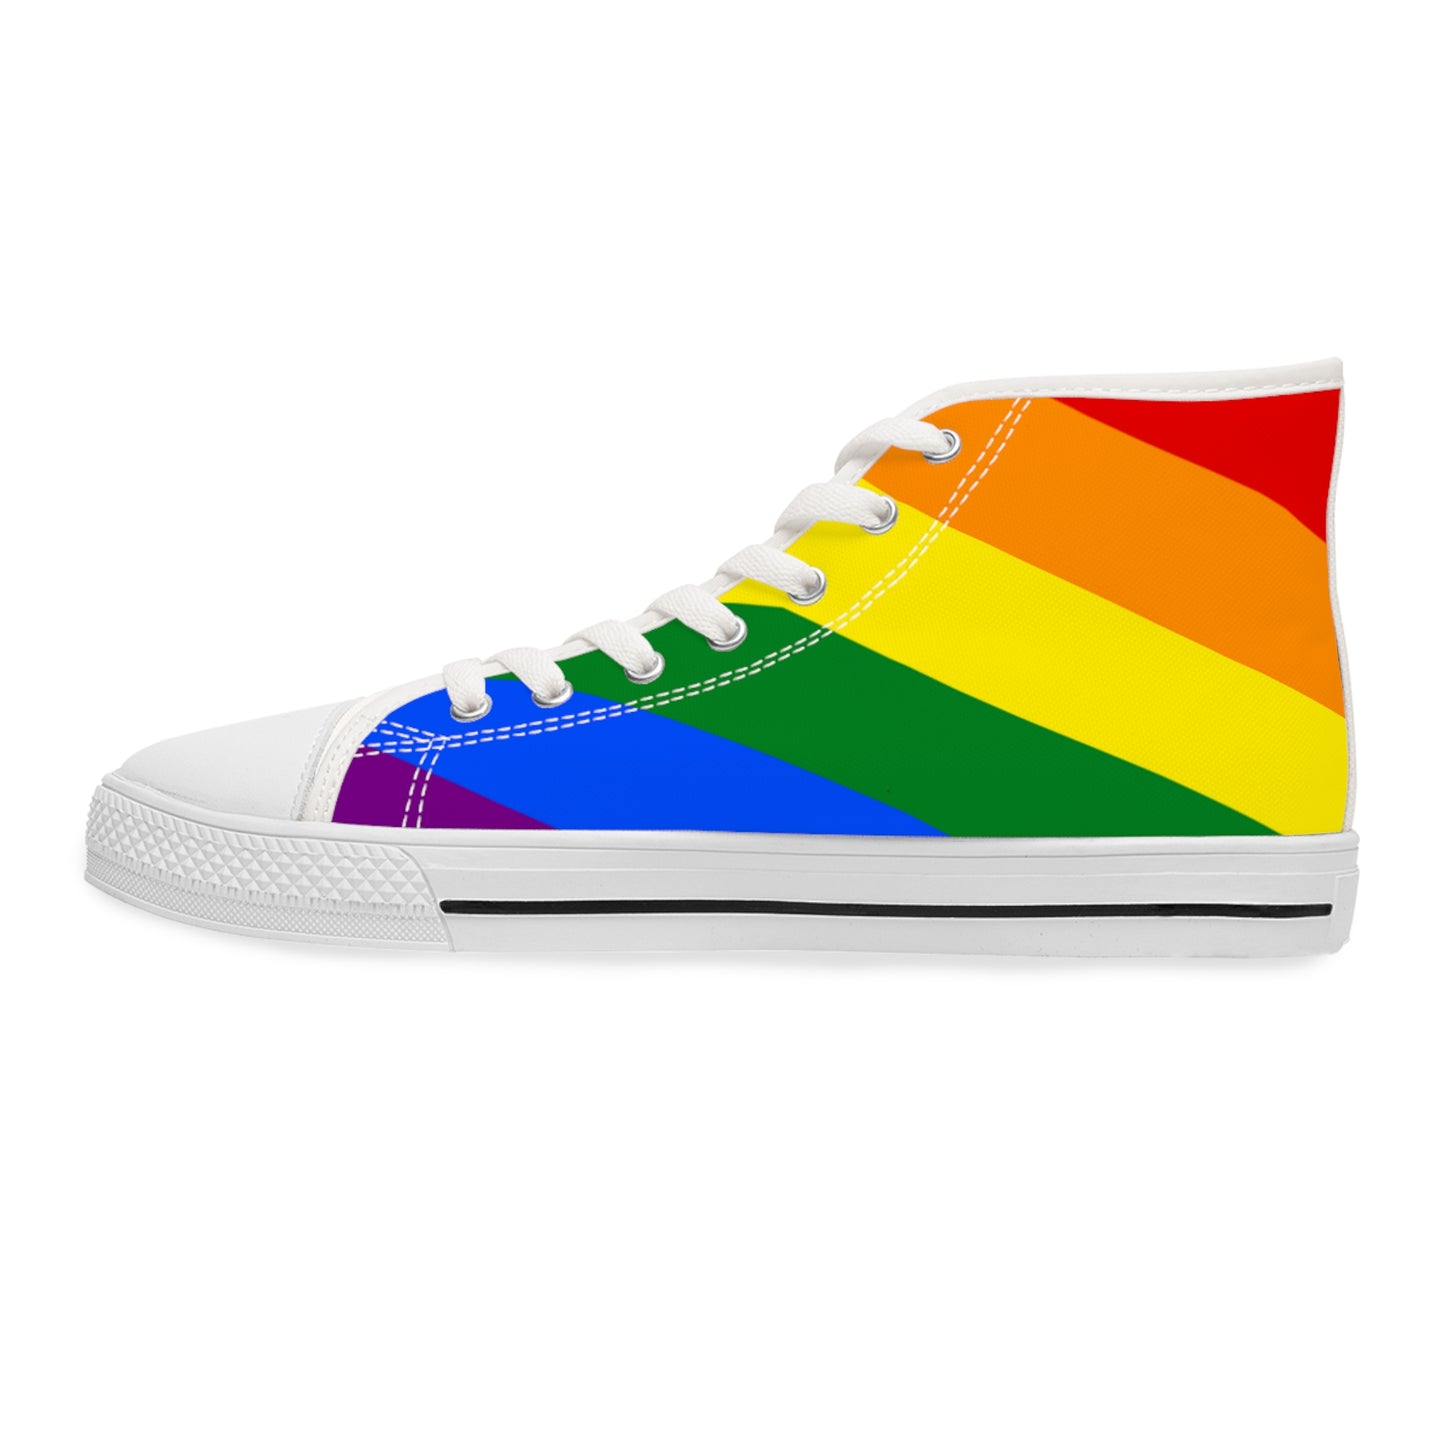 Zapatillas mujer caña alta tipo Converse / LGBTQ